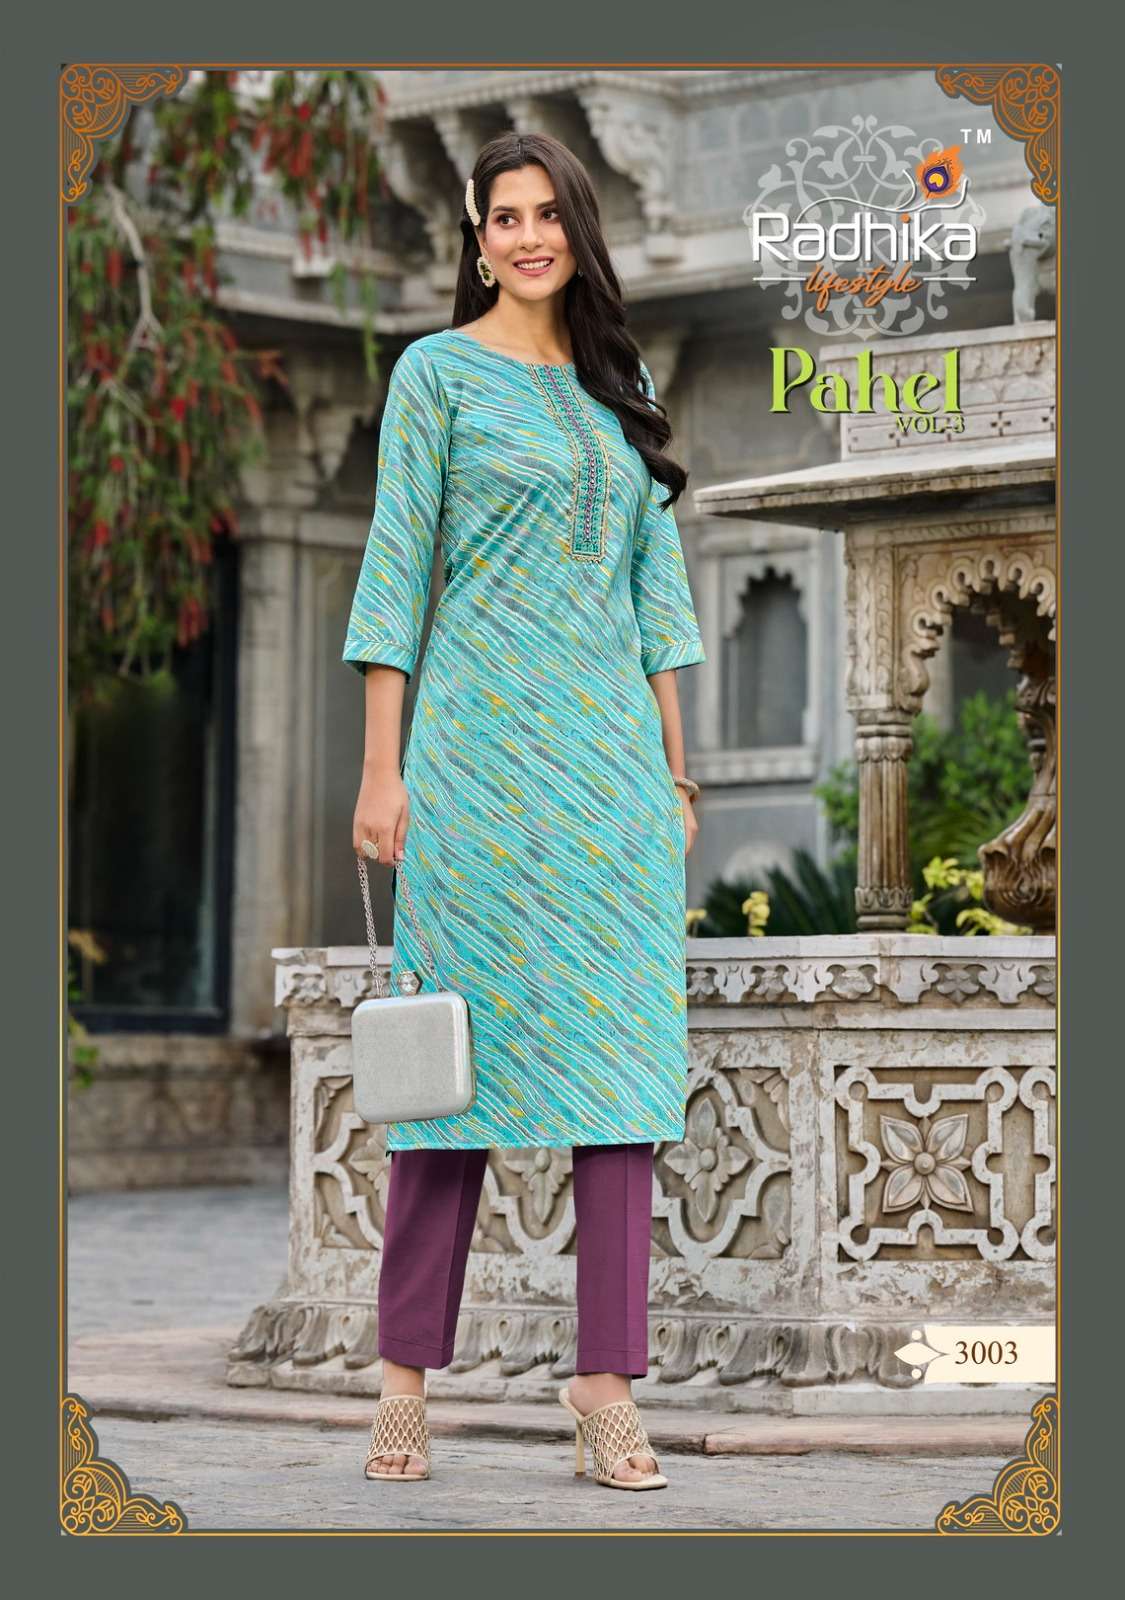 radhika lifestyle pahel vol-3 3001-3008 series fancy designer kurtis catalogue wholesaler surat 